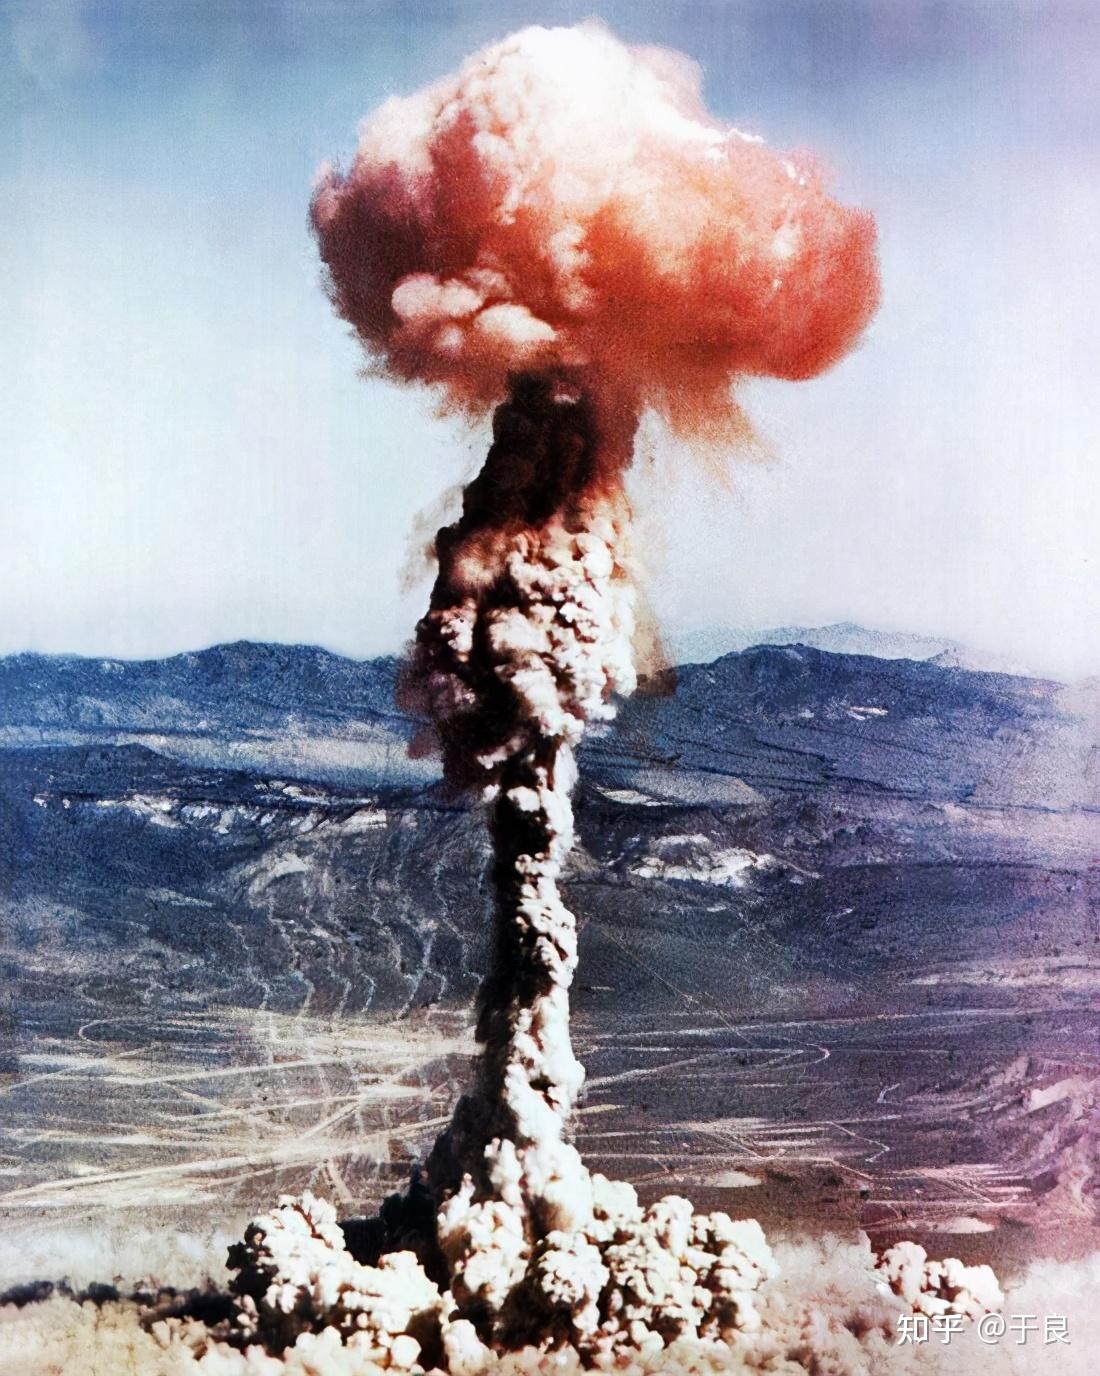 中国第一颗原子弹爆炸我们上面其实只提到了参与研究原子弹的几个人